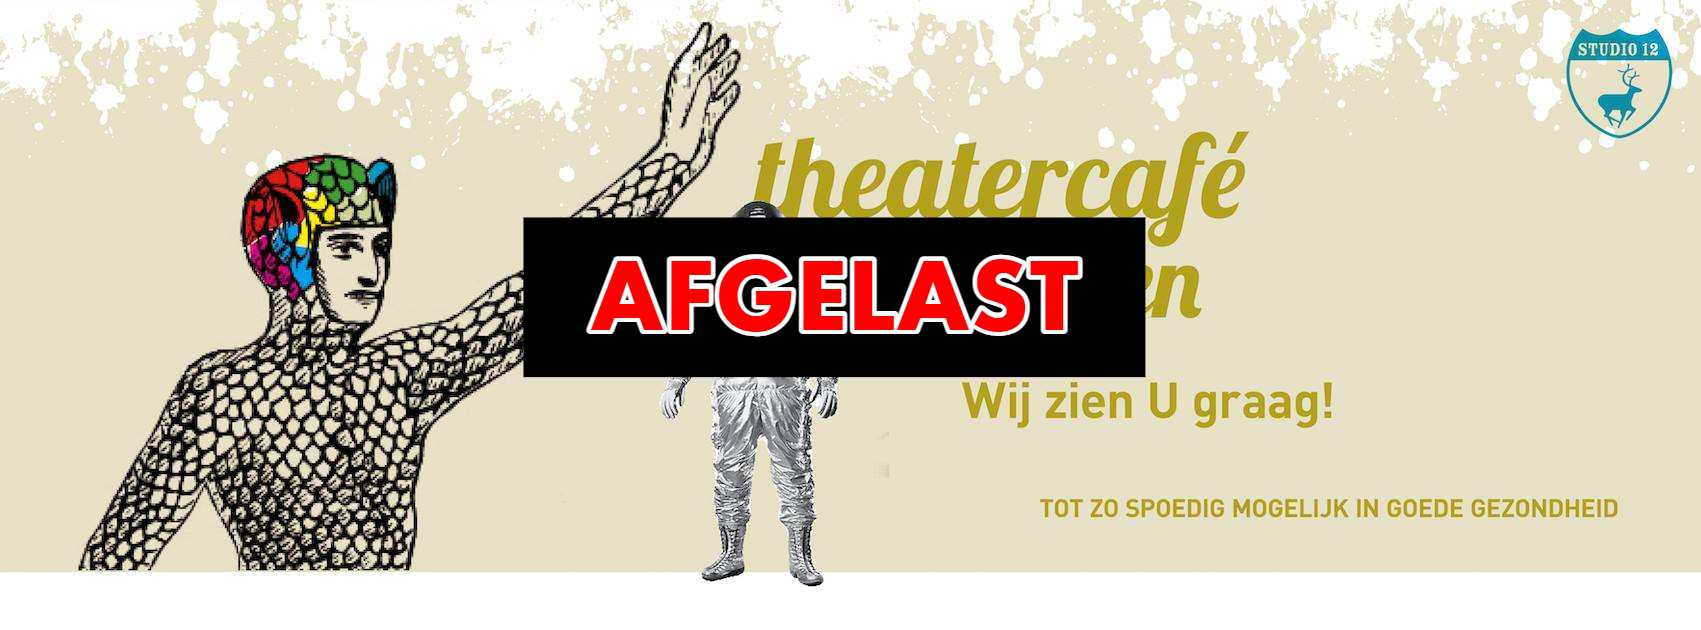 Theatercafe op 11 november in Scheltema Leiden is afgelast